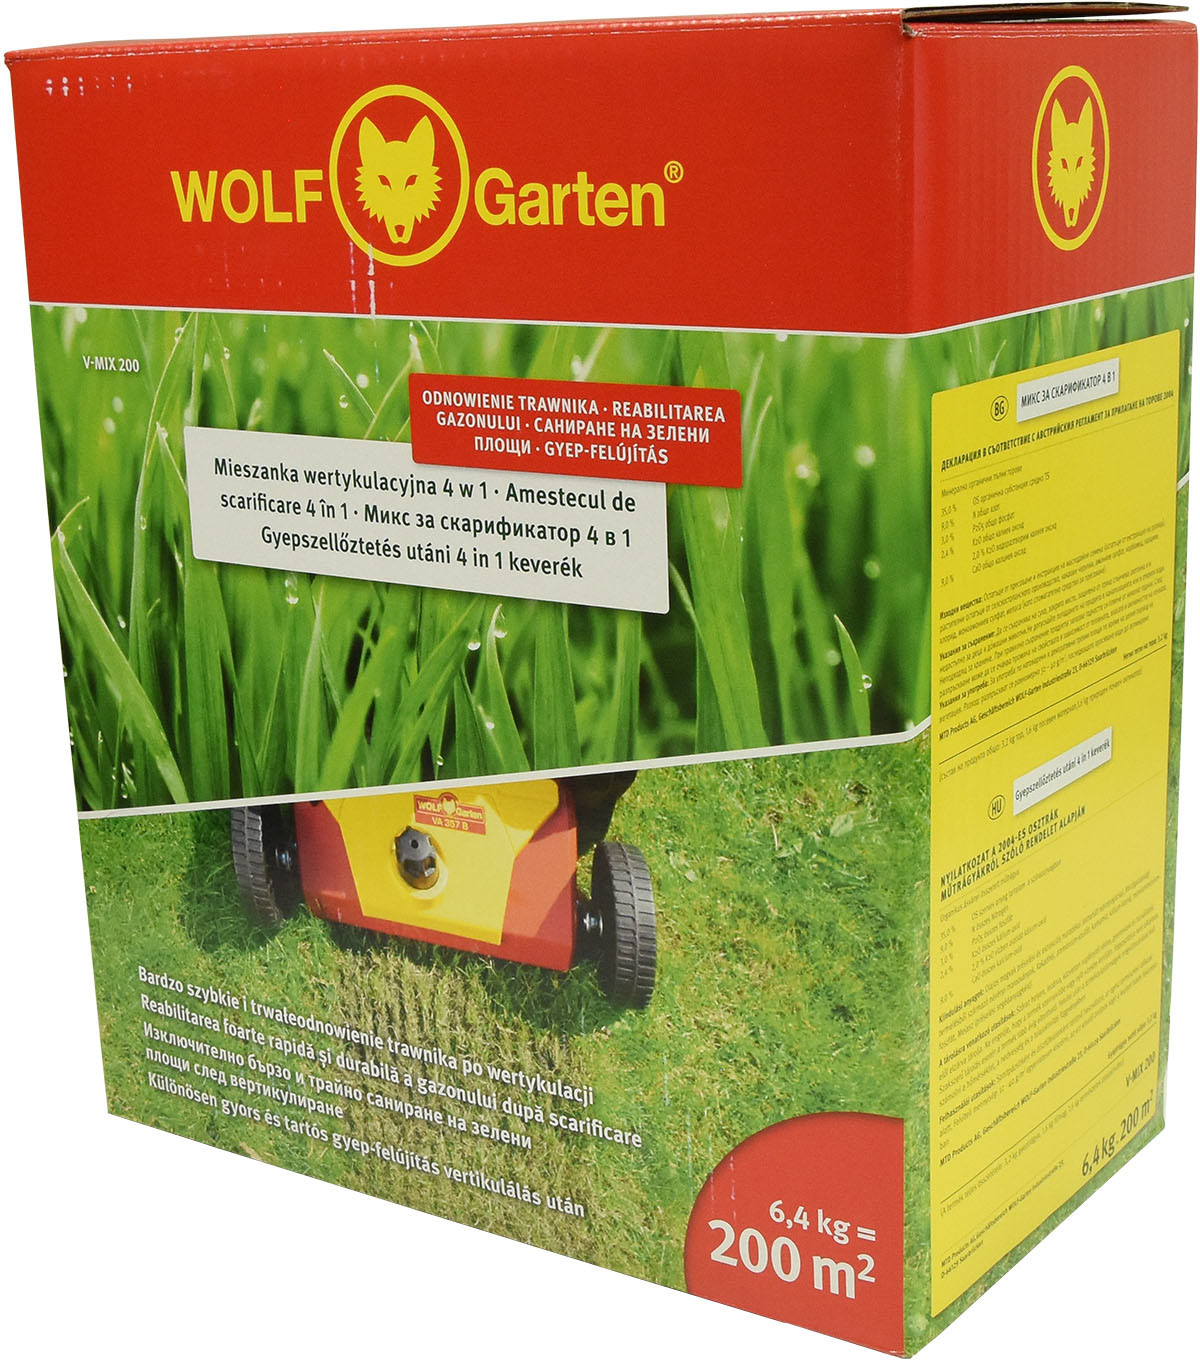 Wolf-Garten Mieszanka Wertykulacyjna 4 w 1 (trawa + nawozy) 6,4 kg/200m2 (3851835)